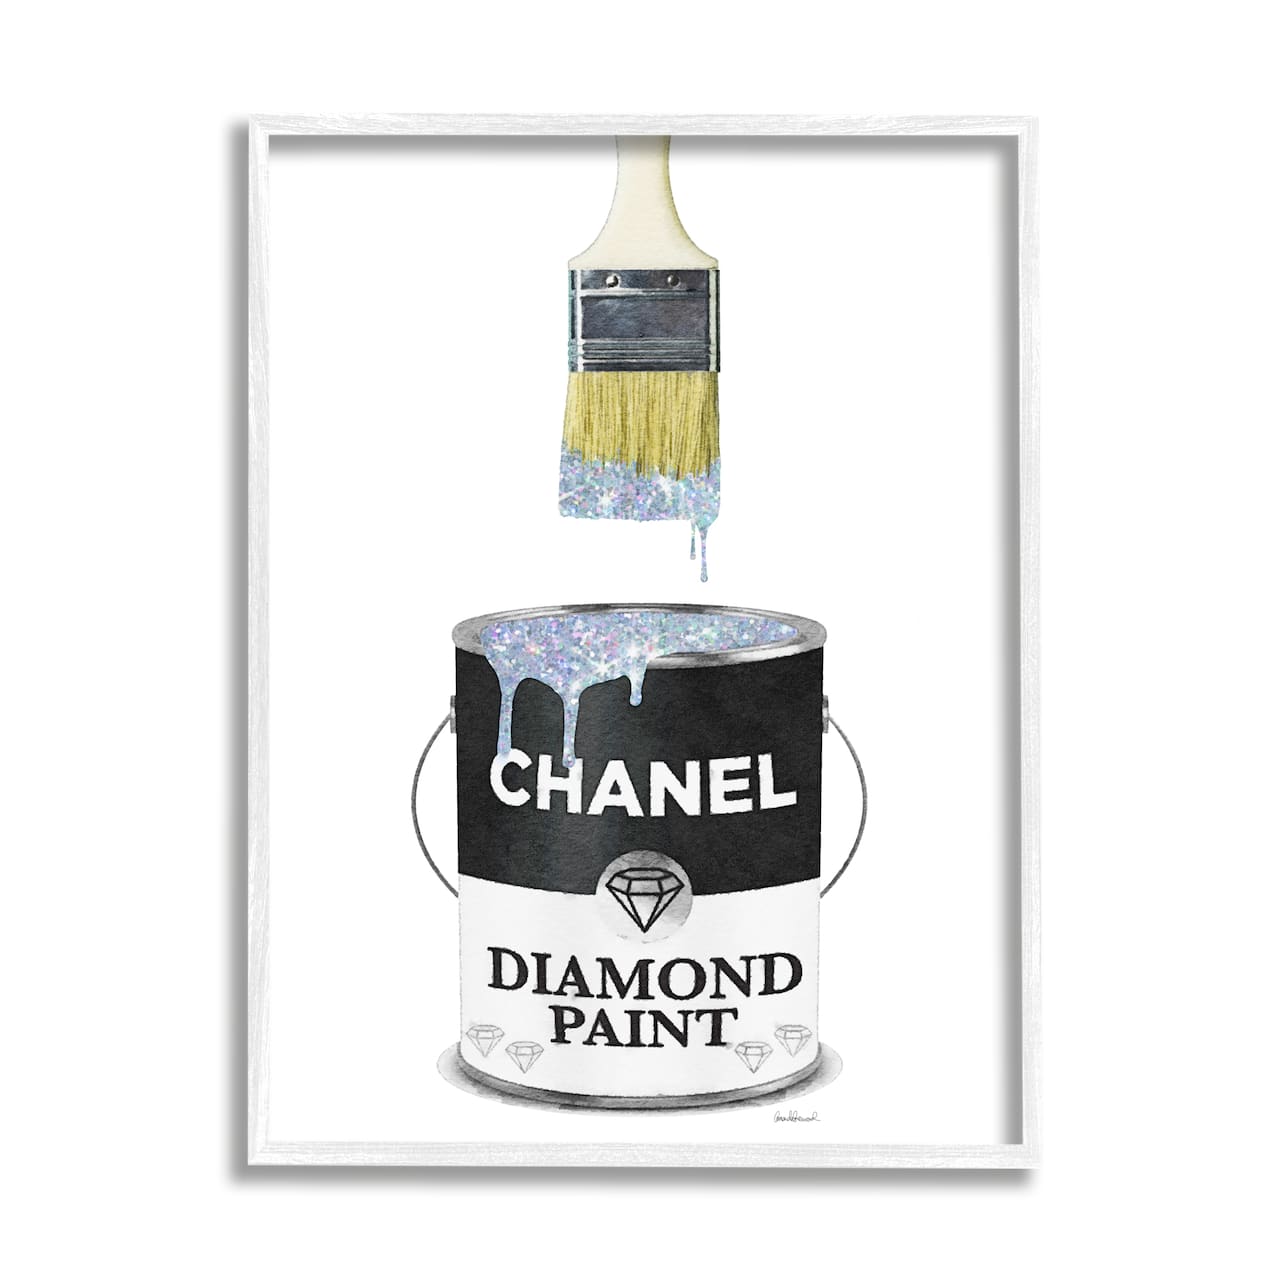 Stupell Glam Pop Fashion Diamond Paint Deluxe Designer Black Framed Wall Art - White - 24 x 30